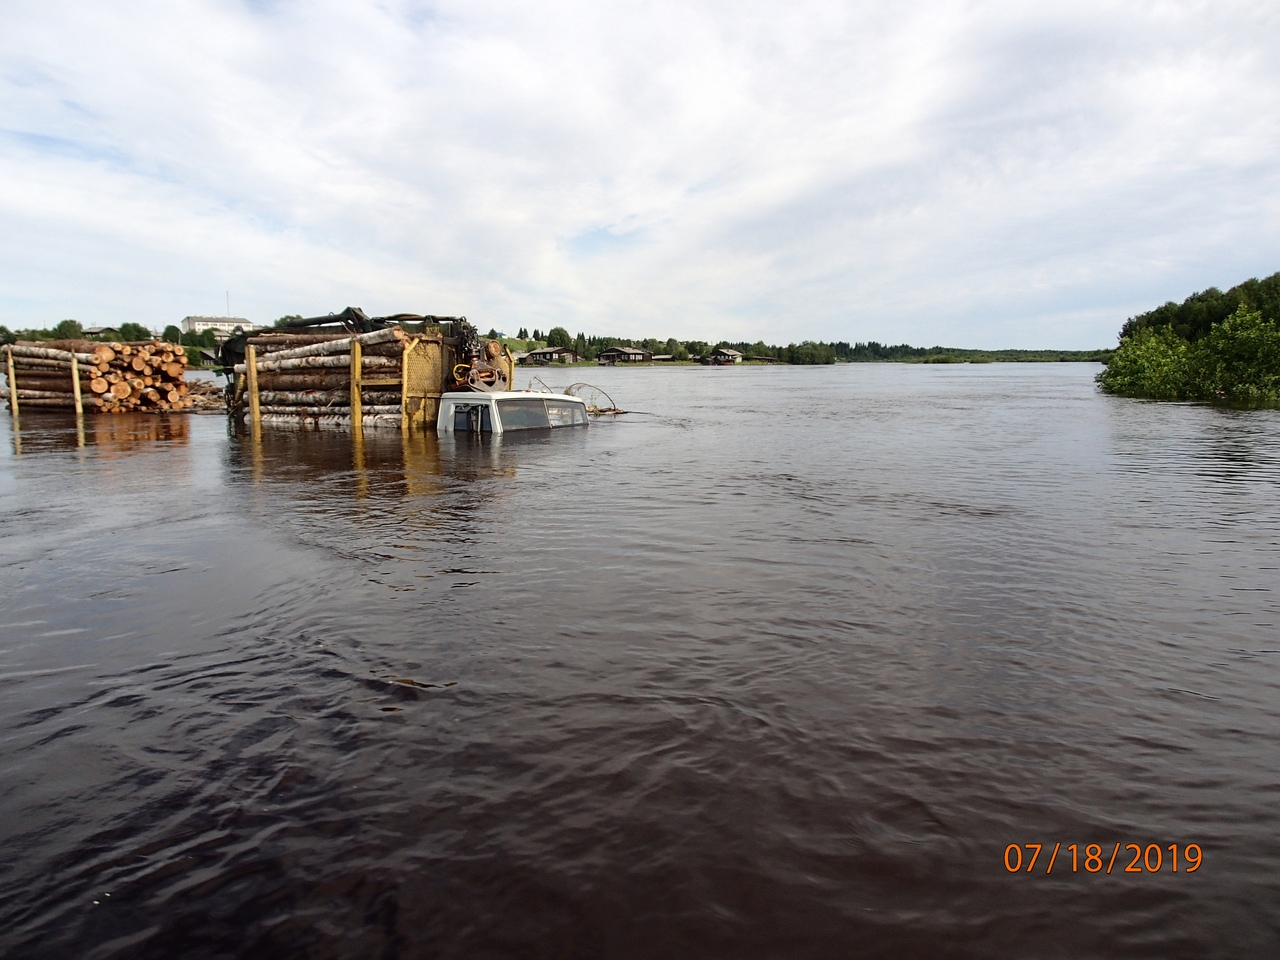 «Вода все прибывает»: глава села в Коми, где мост уплыл вместе с техникой, рассказала о страшном потопе